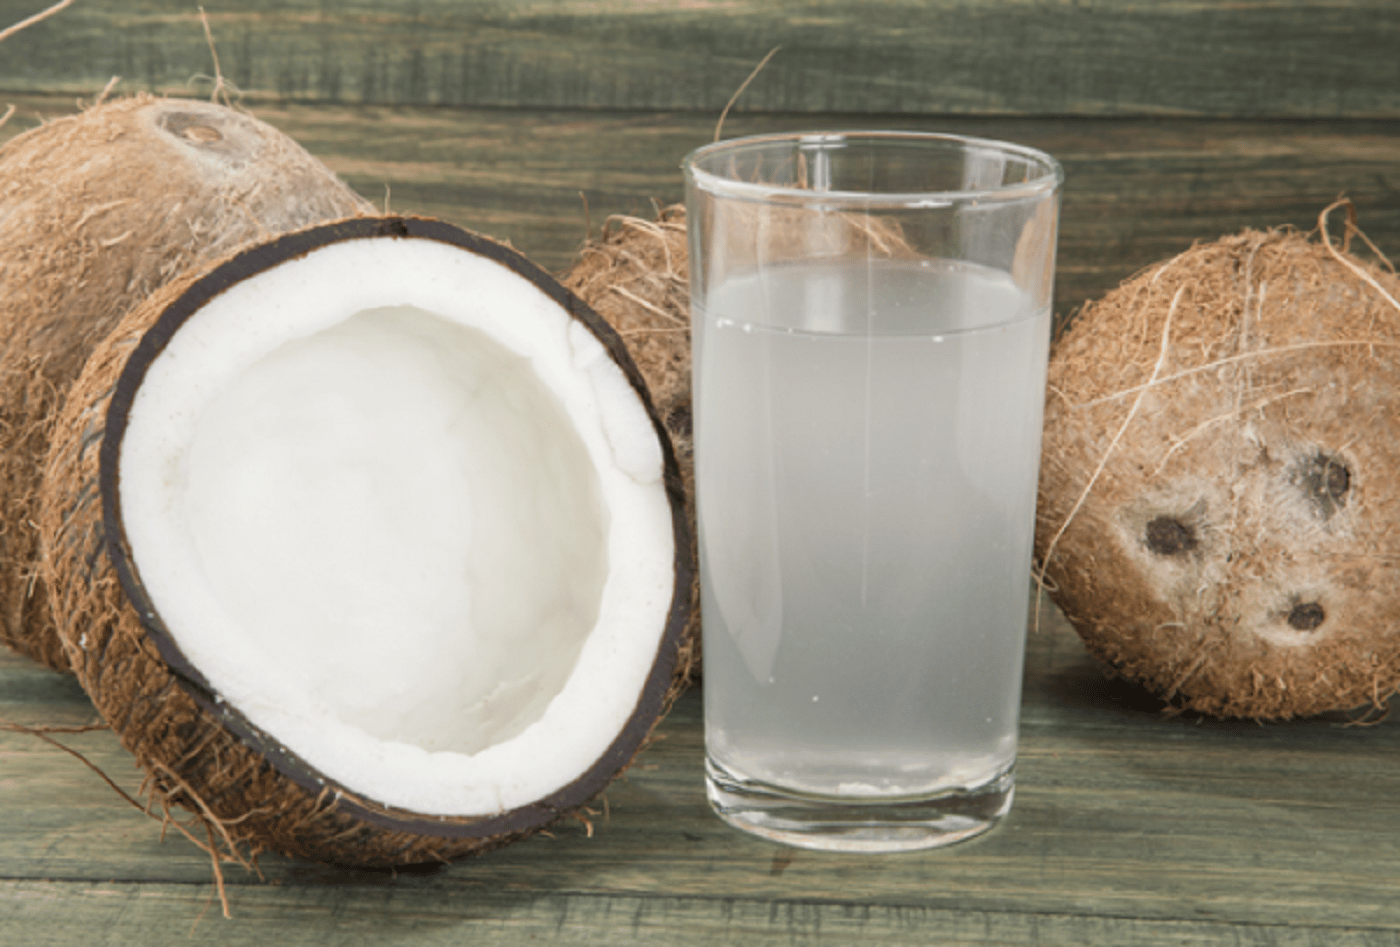 L'eau de coco: 8 secrets surprenants de cette eau miraculeuse